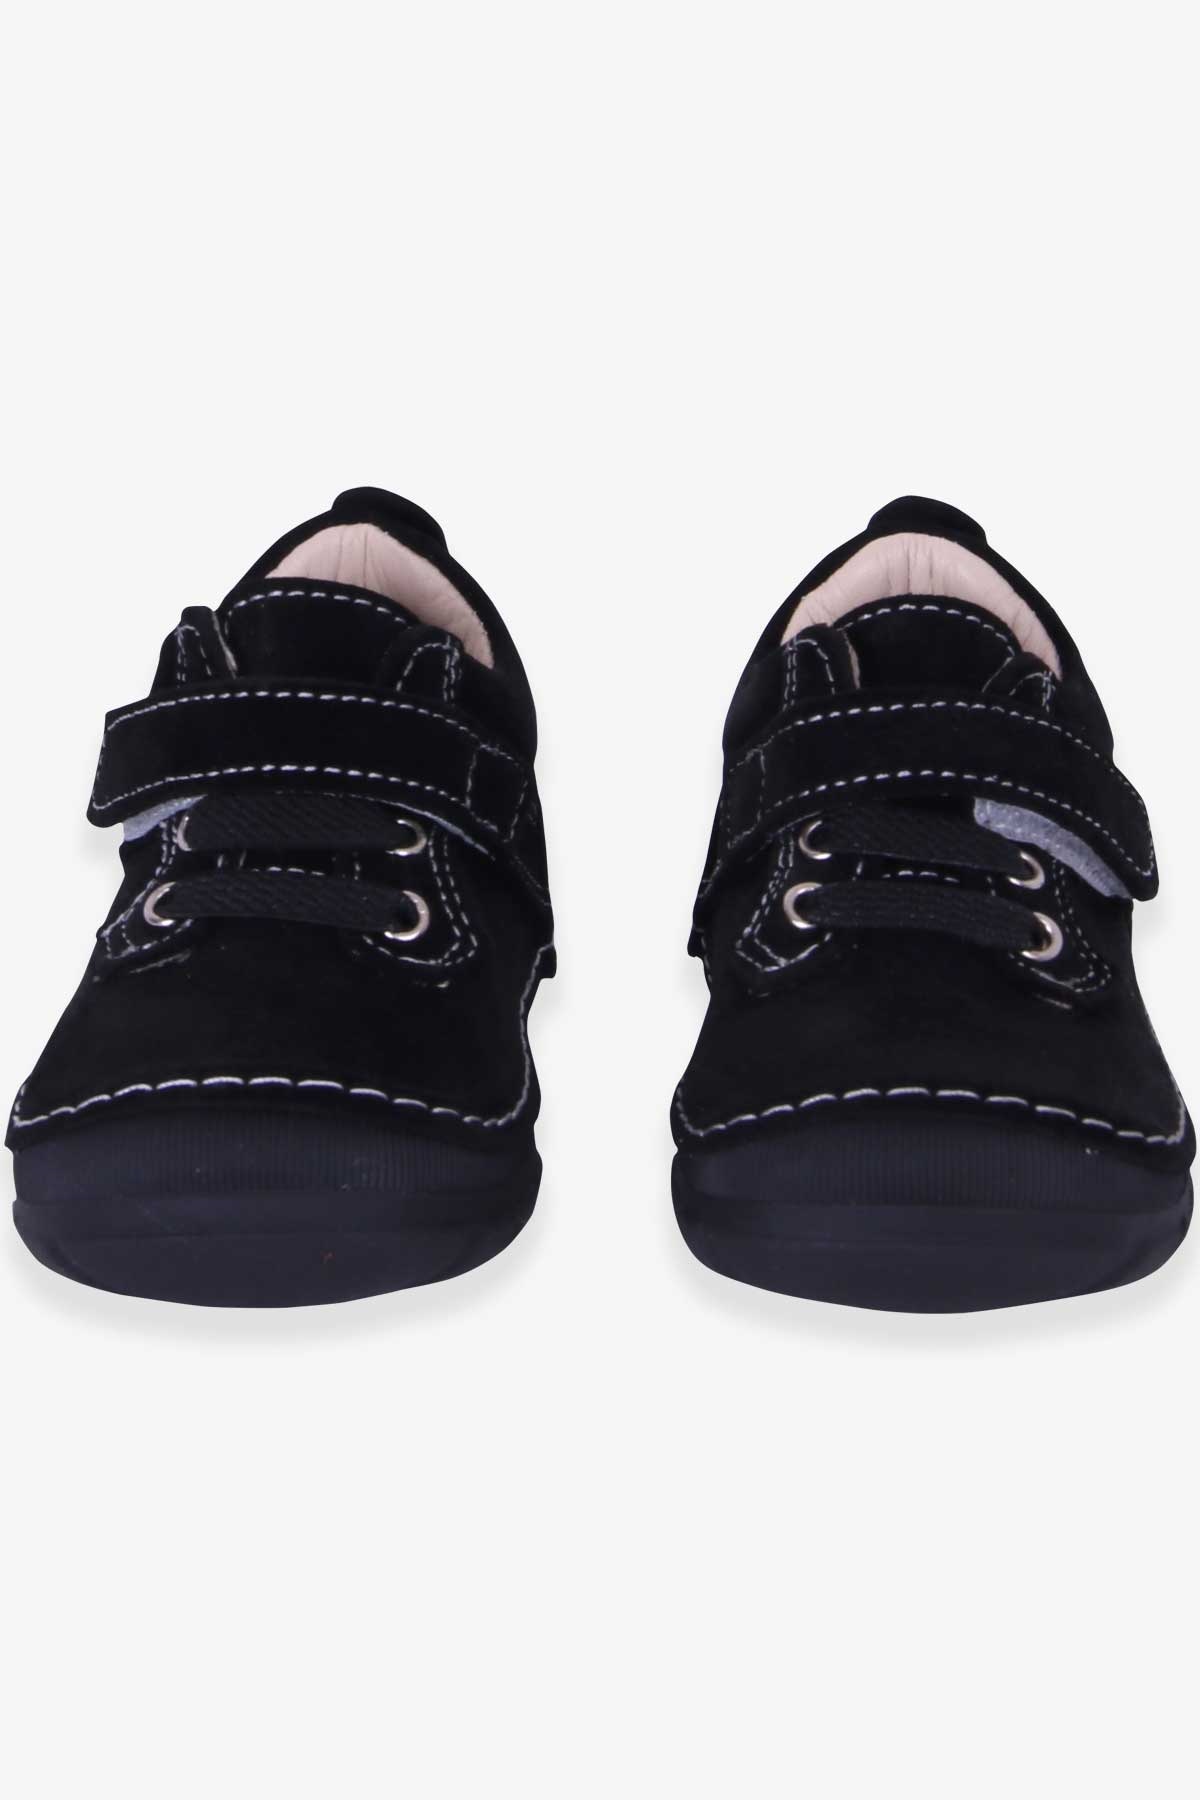 Erkek Çocuk Cırtlı Süet Ayakkabı Siyah 19-20 Numara - Tatlı Modeller |  Breeze